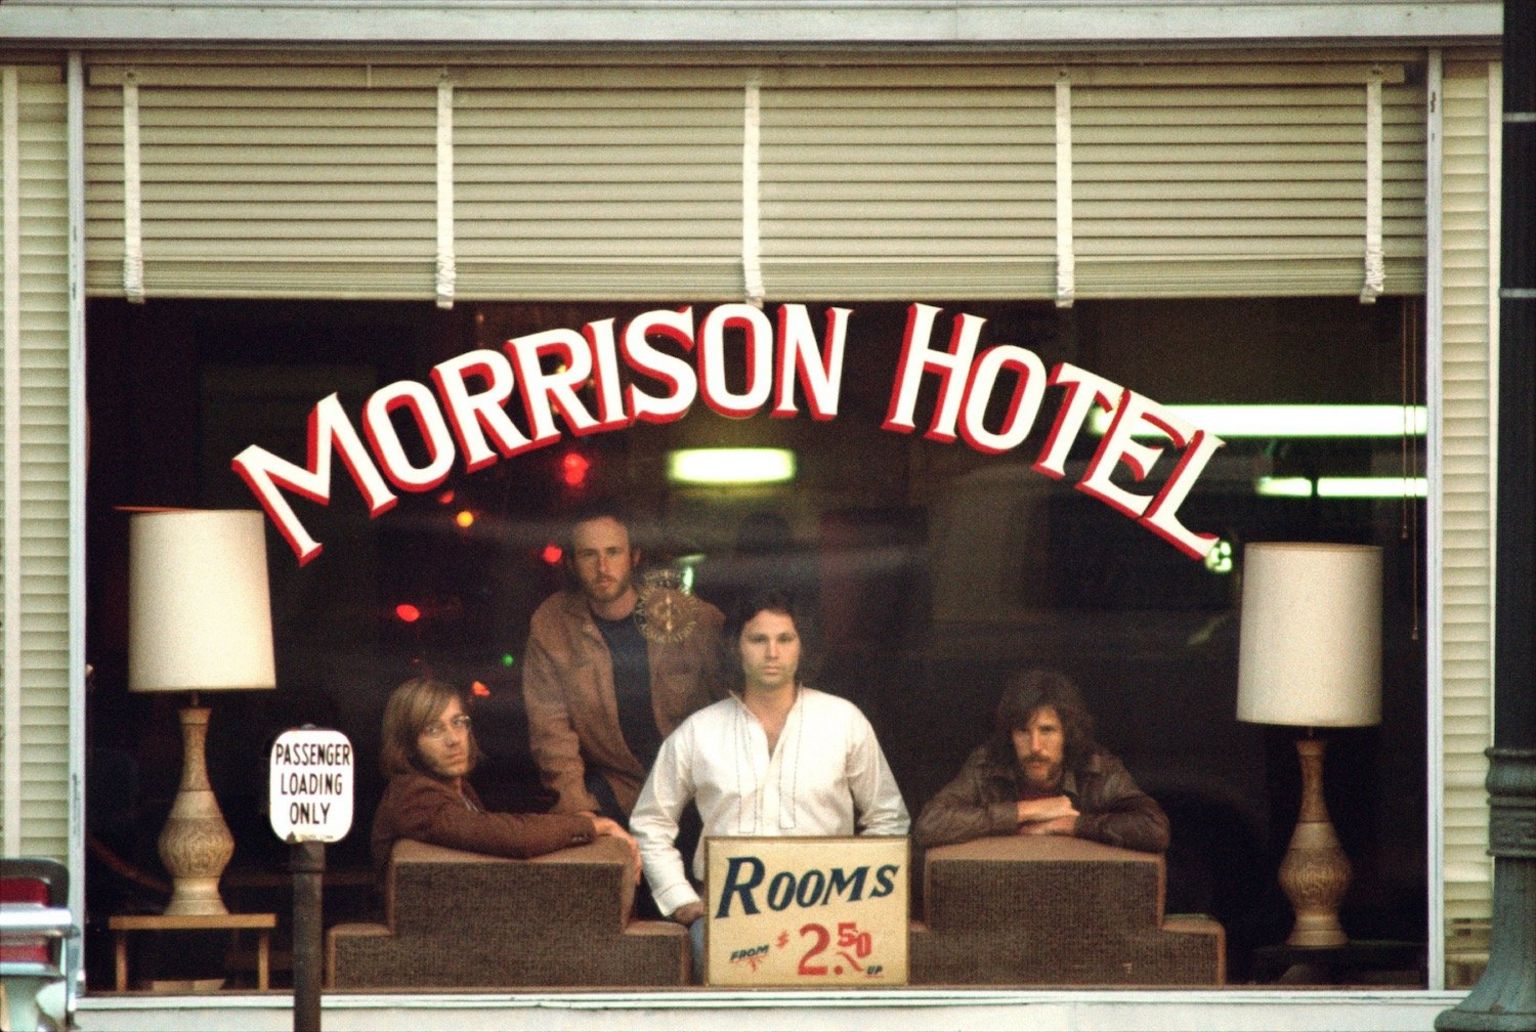 The album artwork for Morrison Hotel